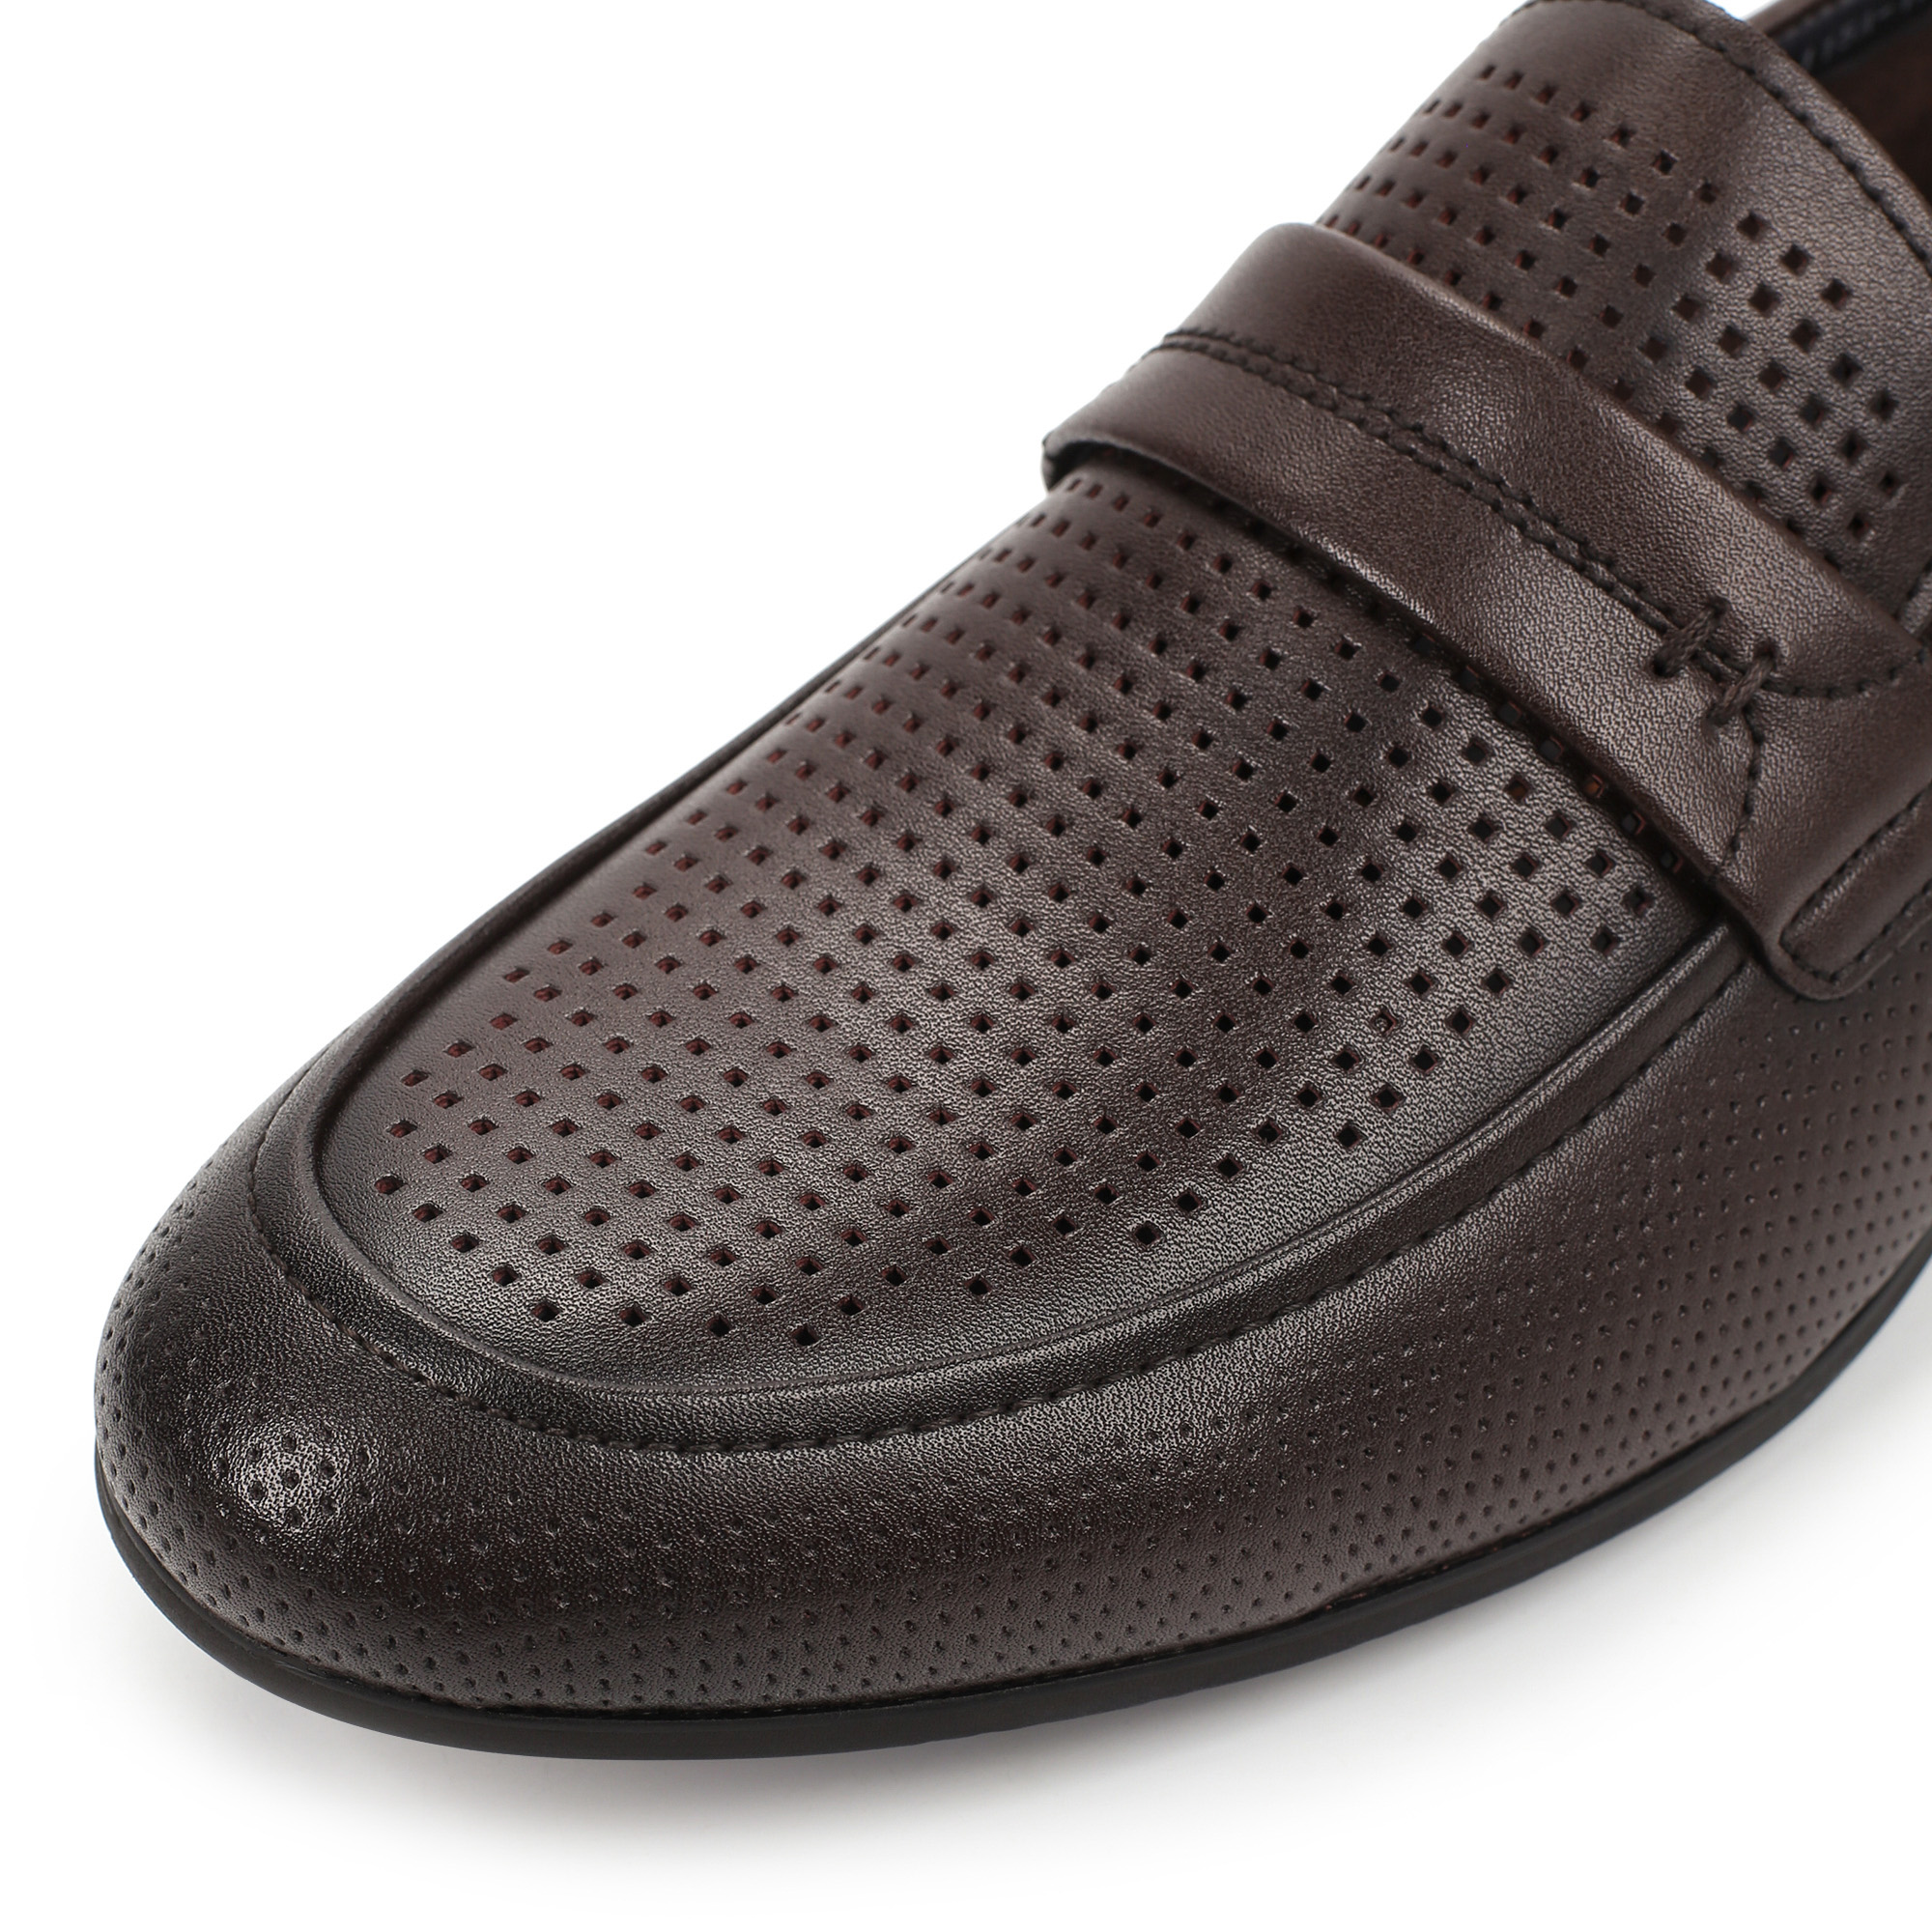 Туфли/полуботинки Thomas Munz 058-115A-1609, цвет темно-коричневый, размер 41 - фото 6